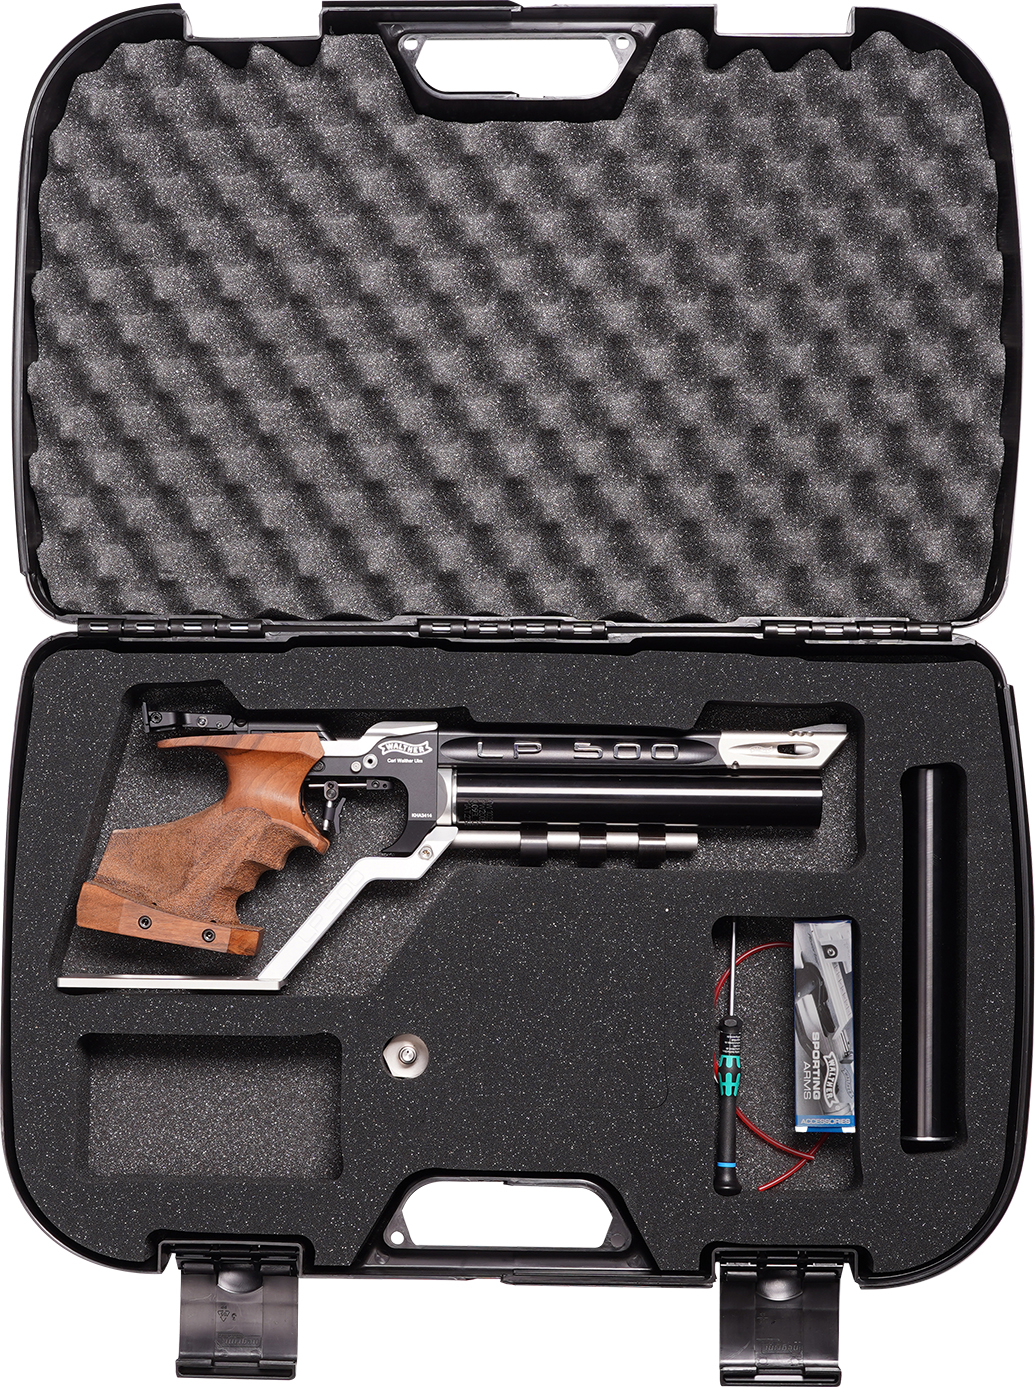 Walther Pistolenkoffer Mod. AUFLAGE  online kaufen bei SE ShootingEquipment